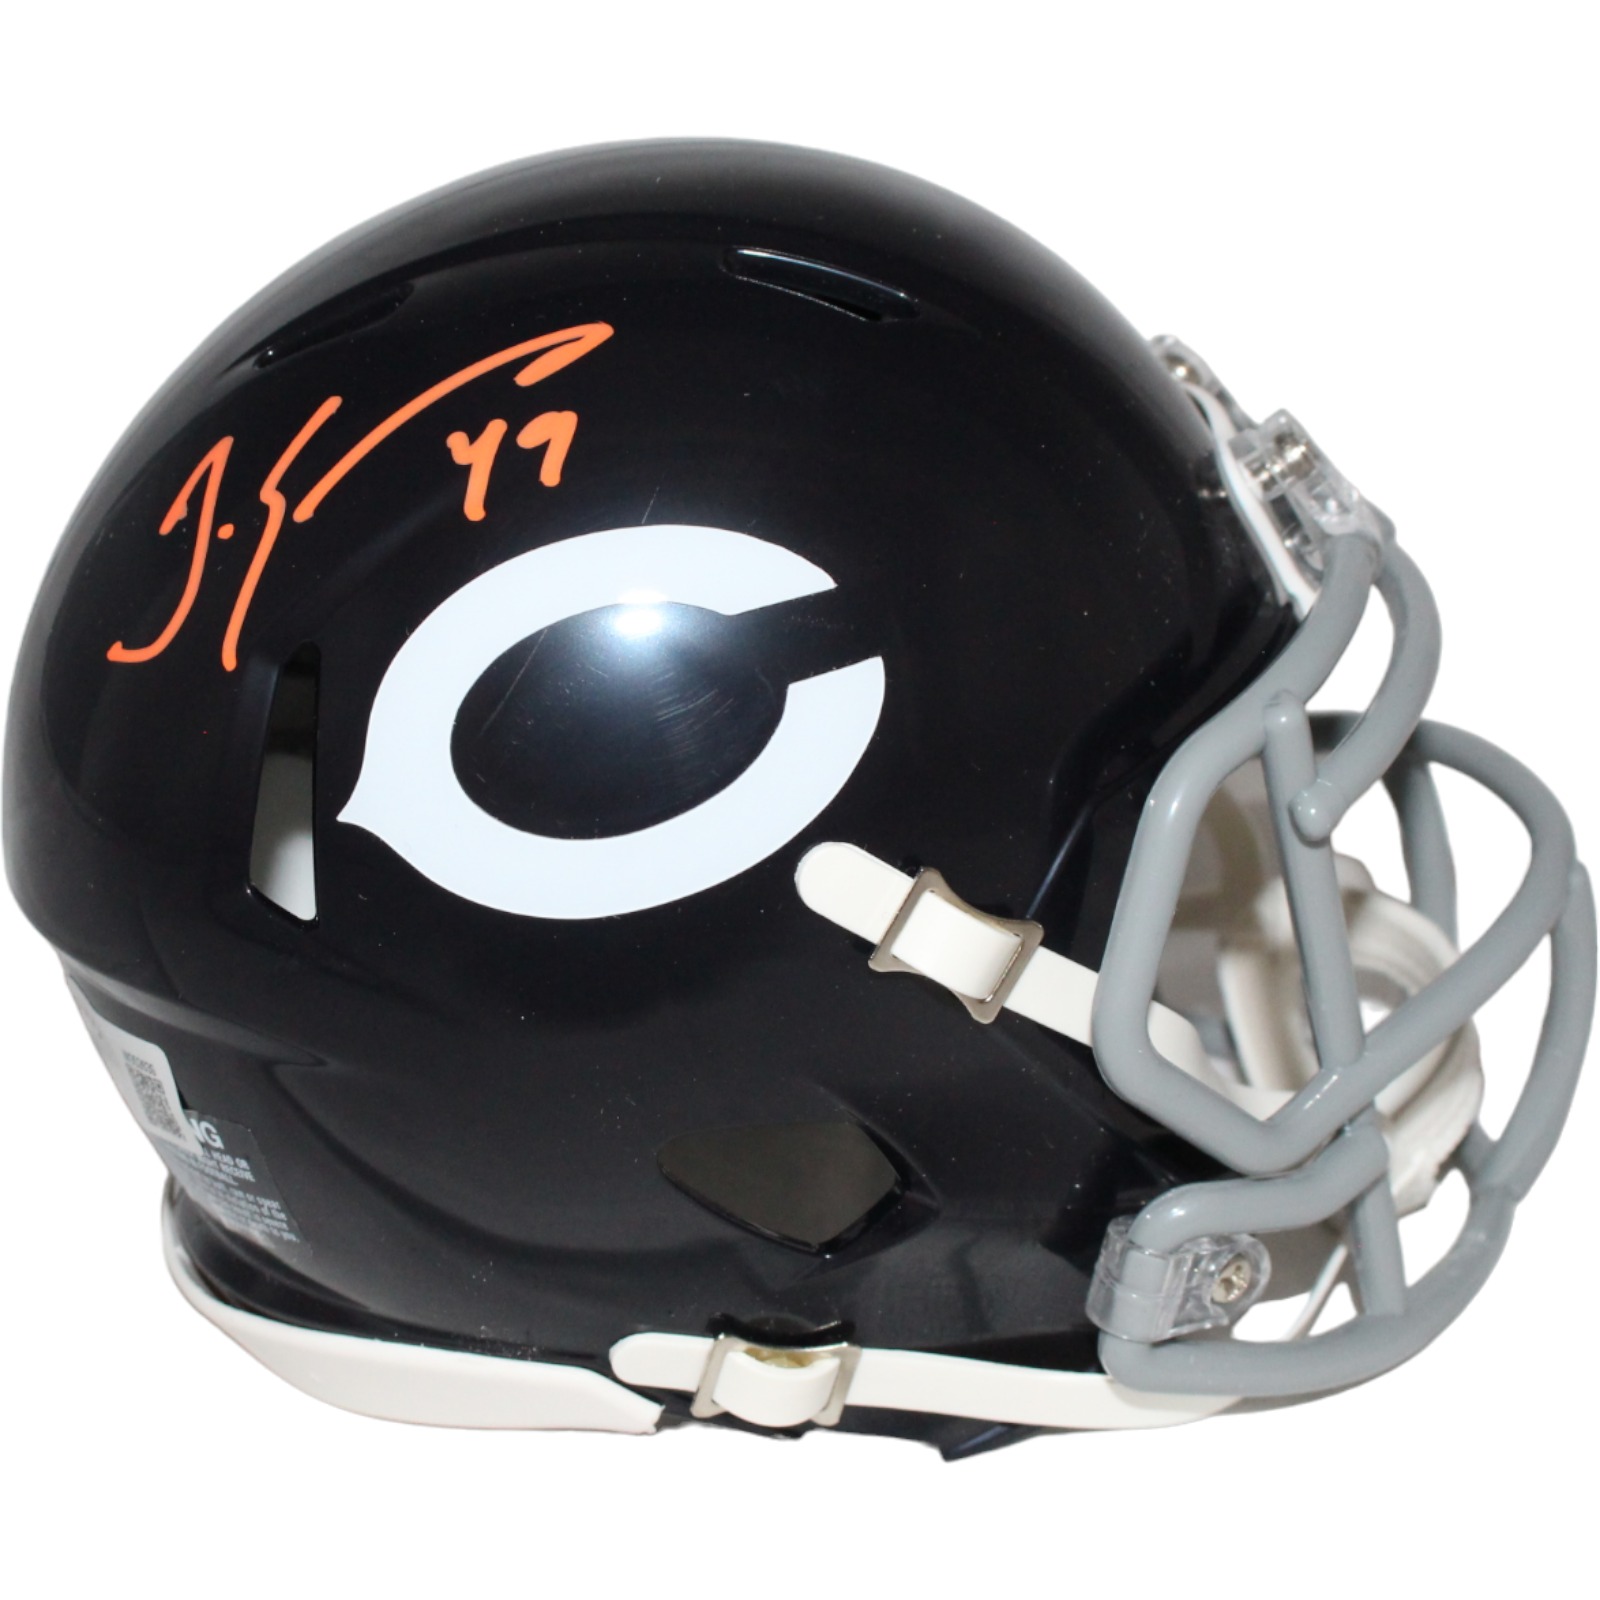 Tremaine Edmunds Signed Chicago Bears Mini Helmet Beckett